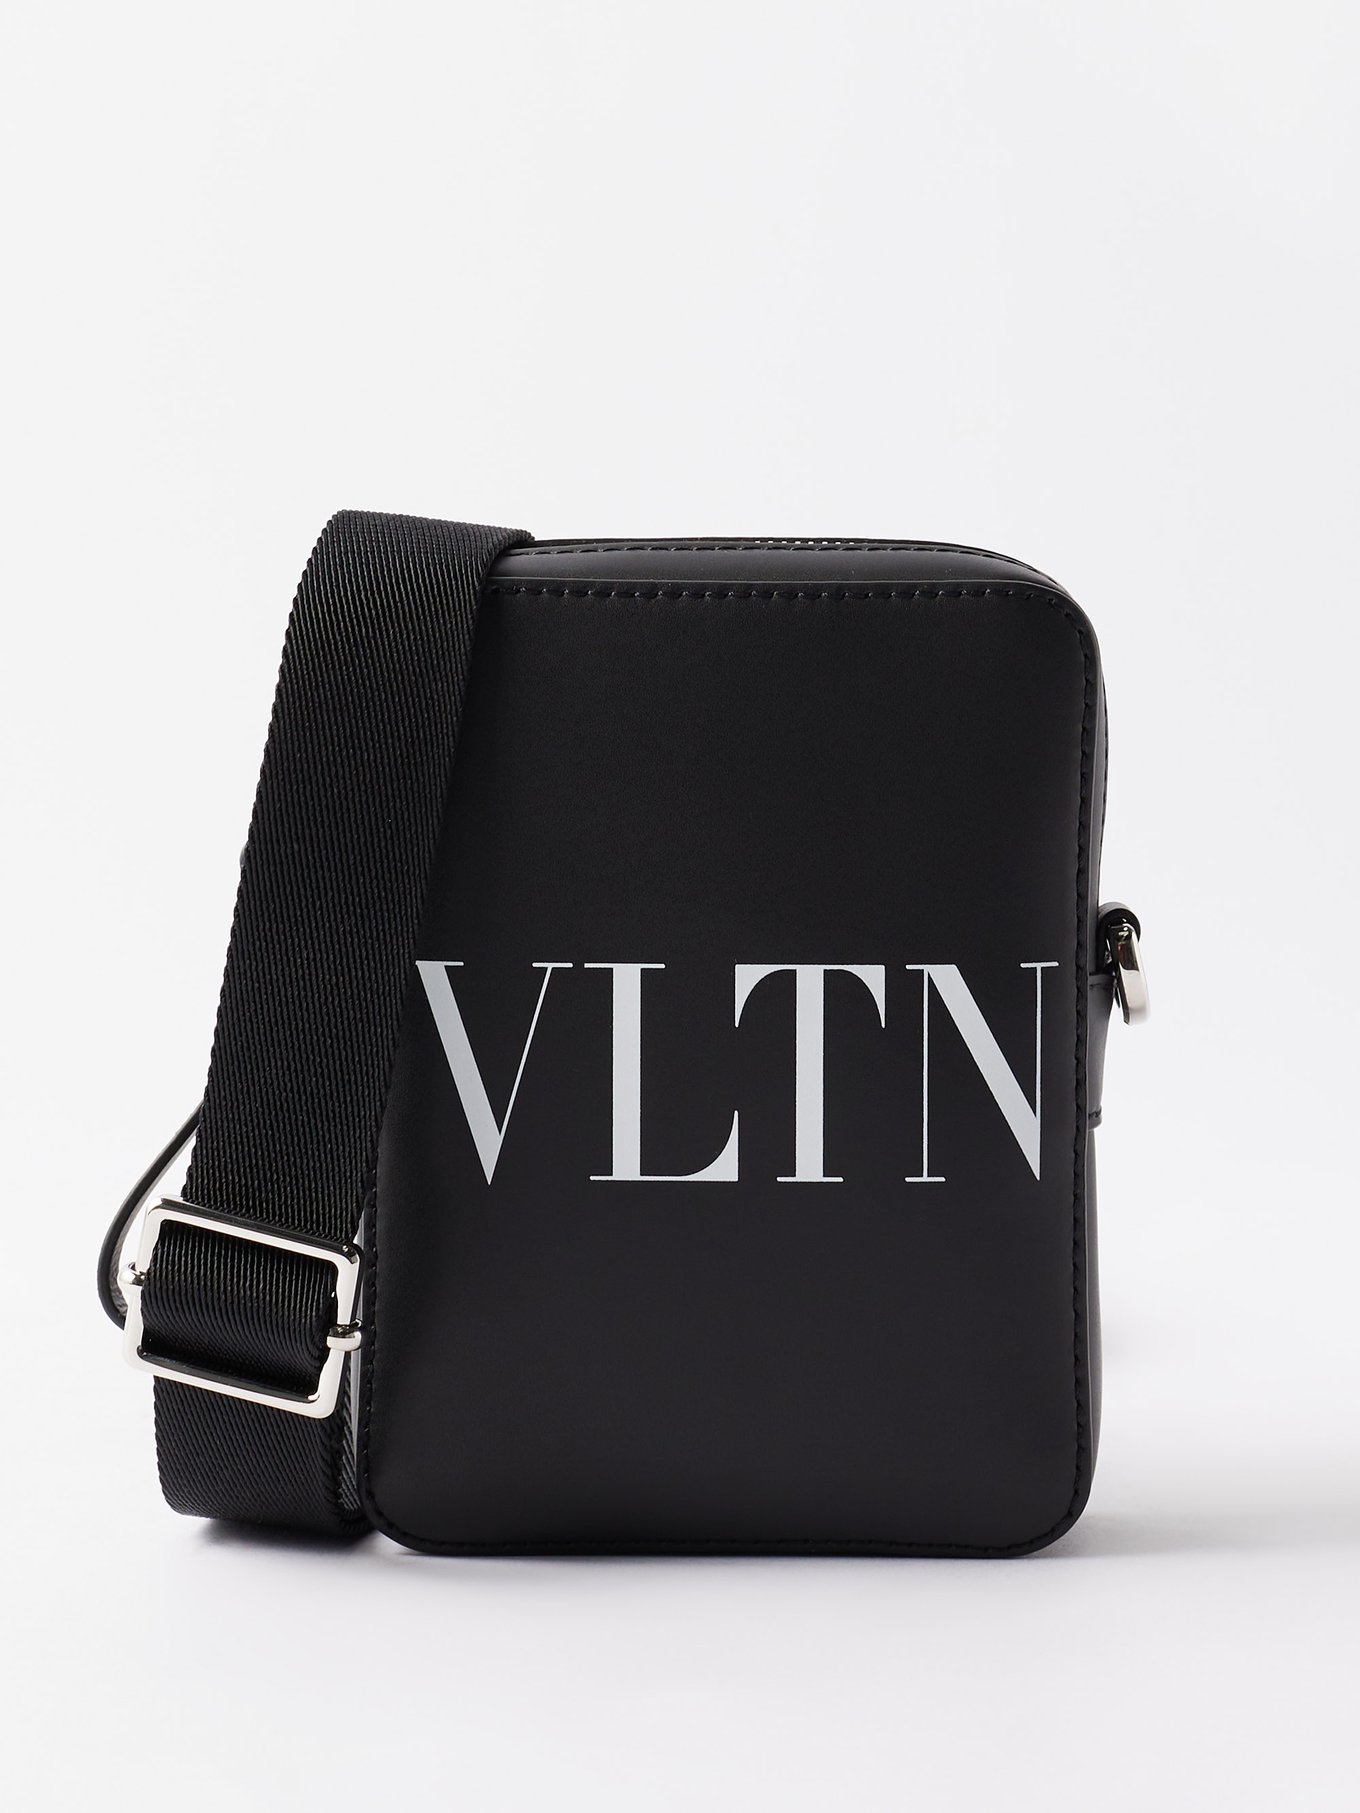 VALENTINO GARAVANI: VLTN leather bag - Black  Valentino Garavani shoulder  bag 3Y2B0704WJW online at